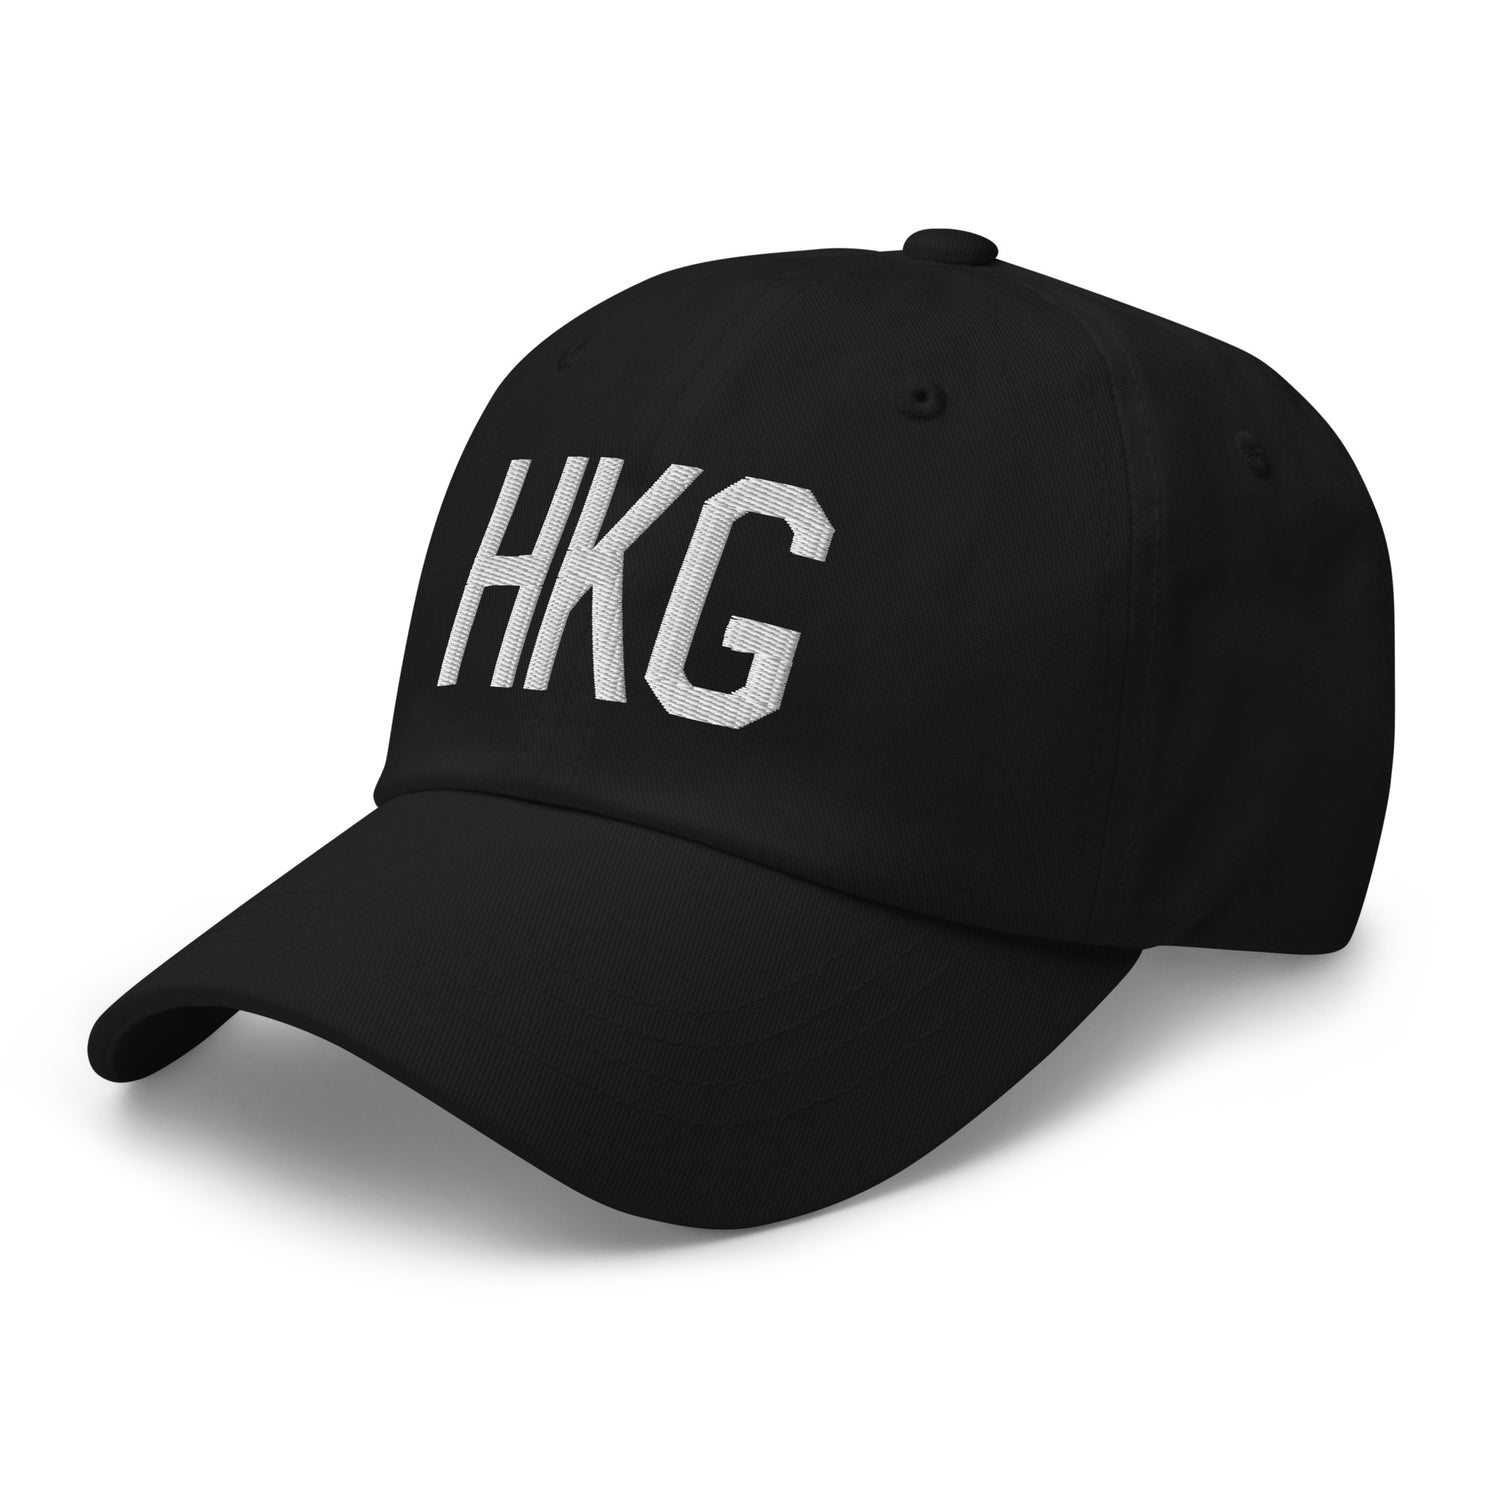 Hong Kong China Hats and Caps • HKG Airport Code